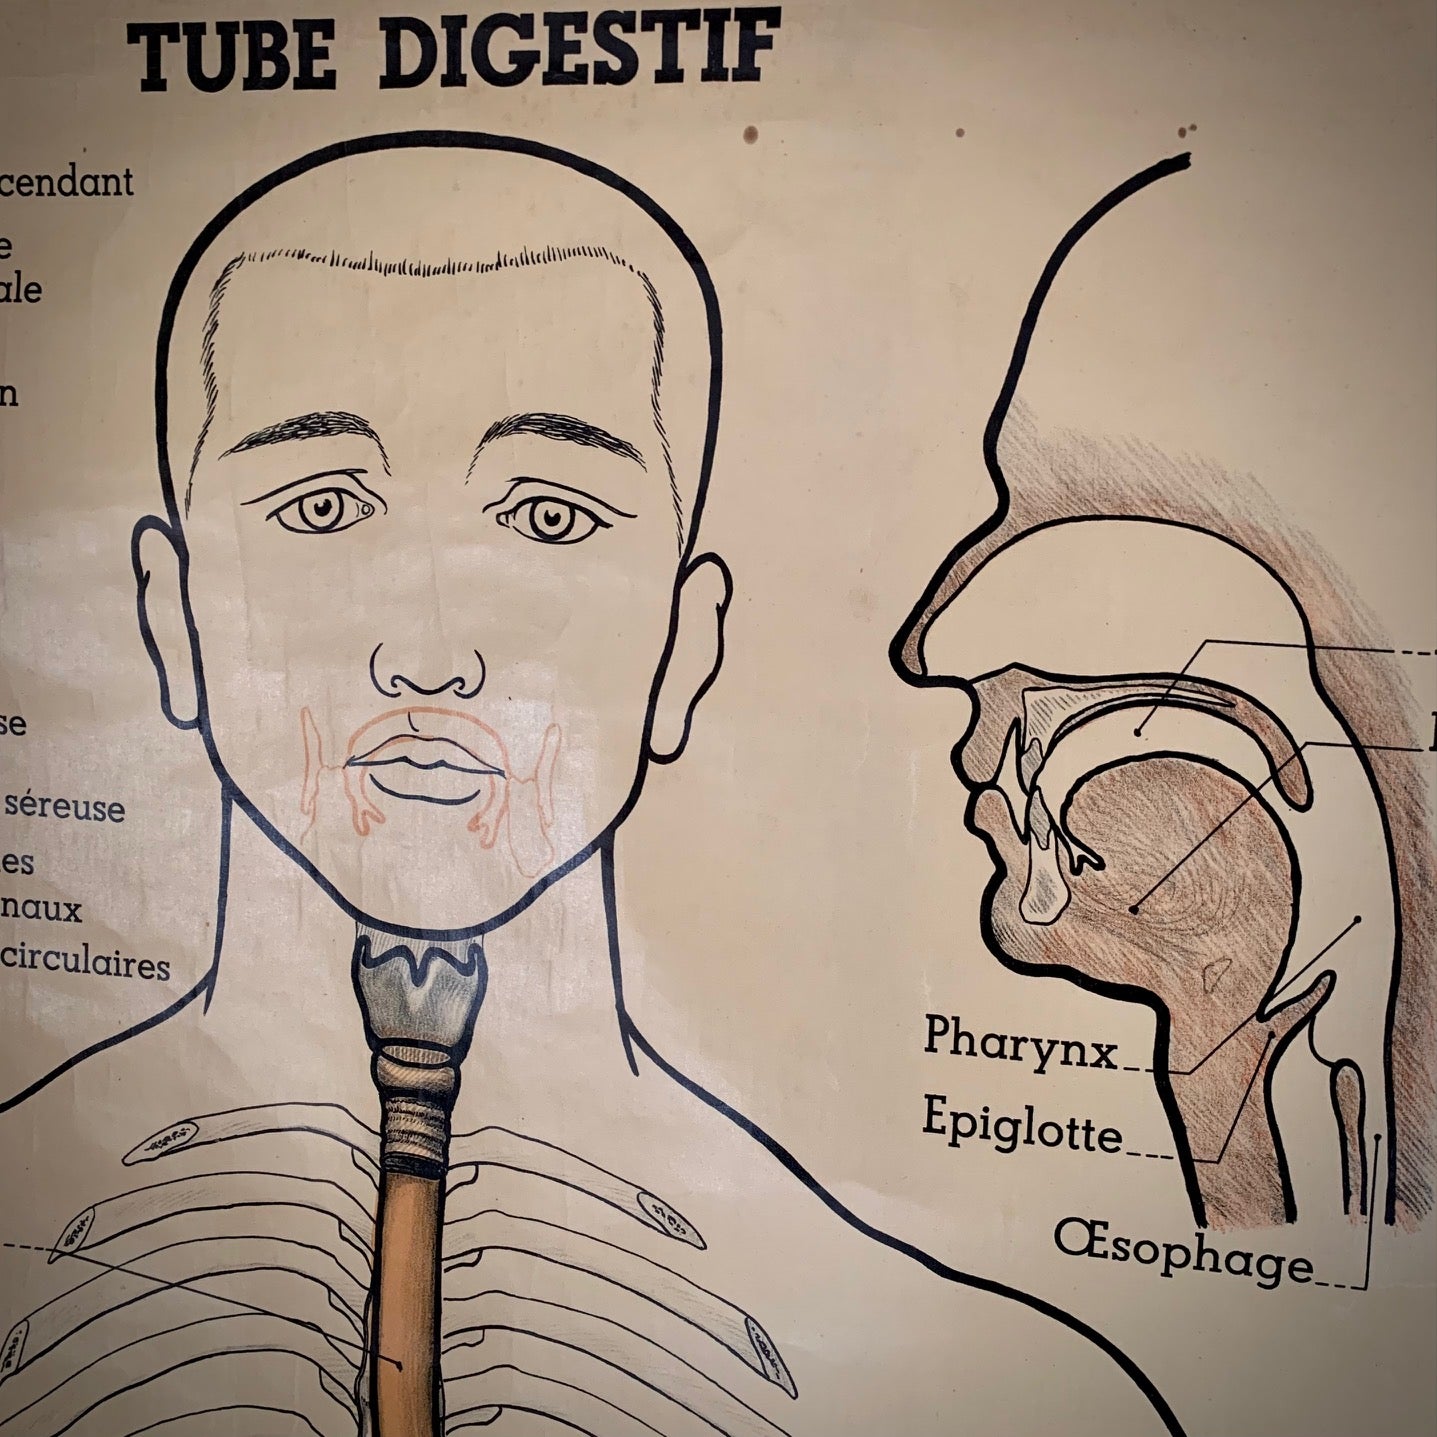 Planche anatomique - Tube digestif. Signé Arnould Moreaux. Librairie Maloine , rue de l'Ecole de Médecine. Paris.